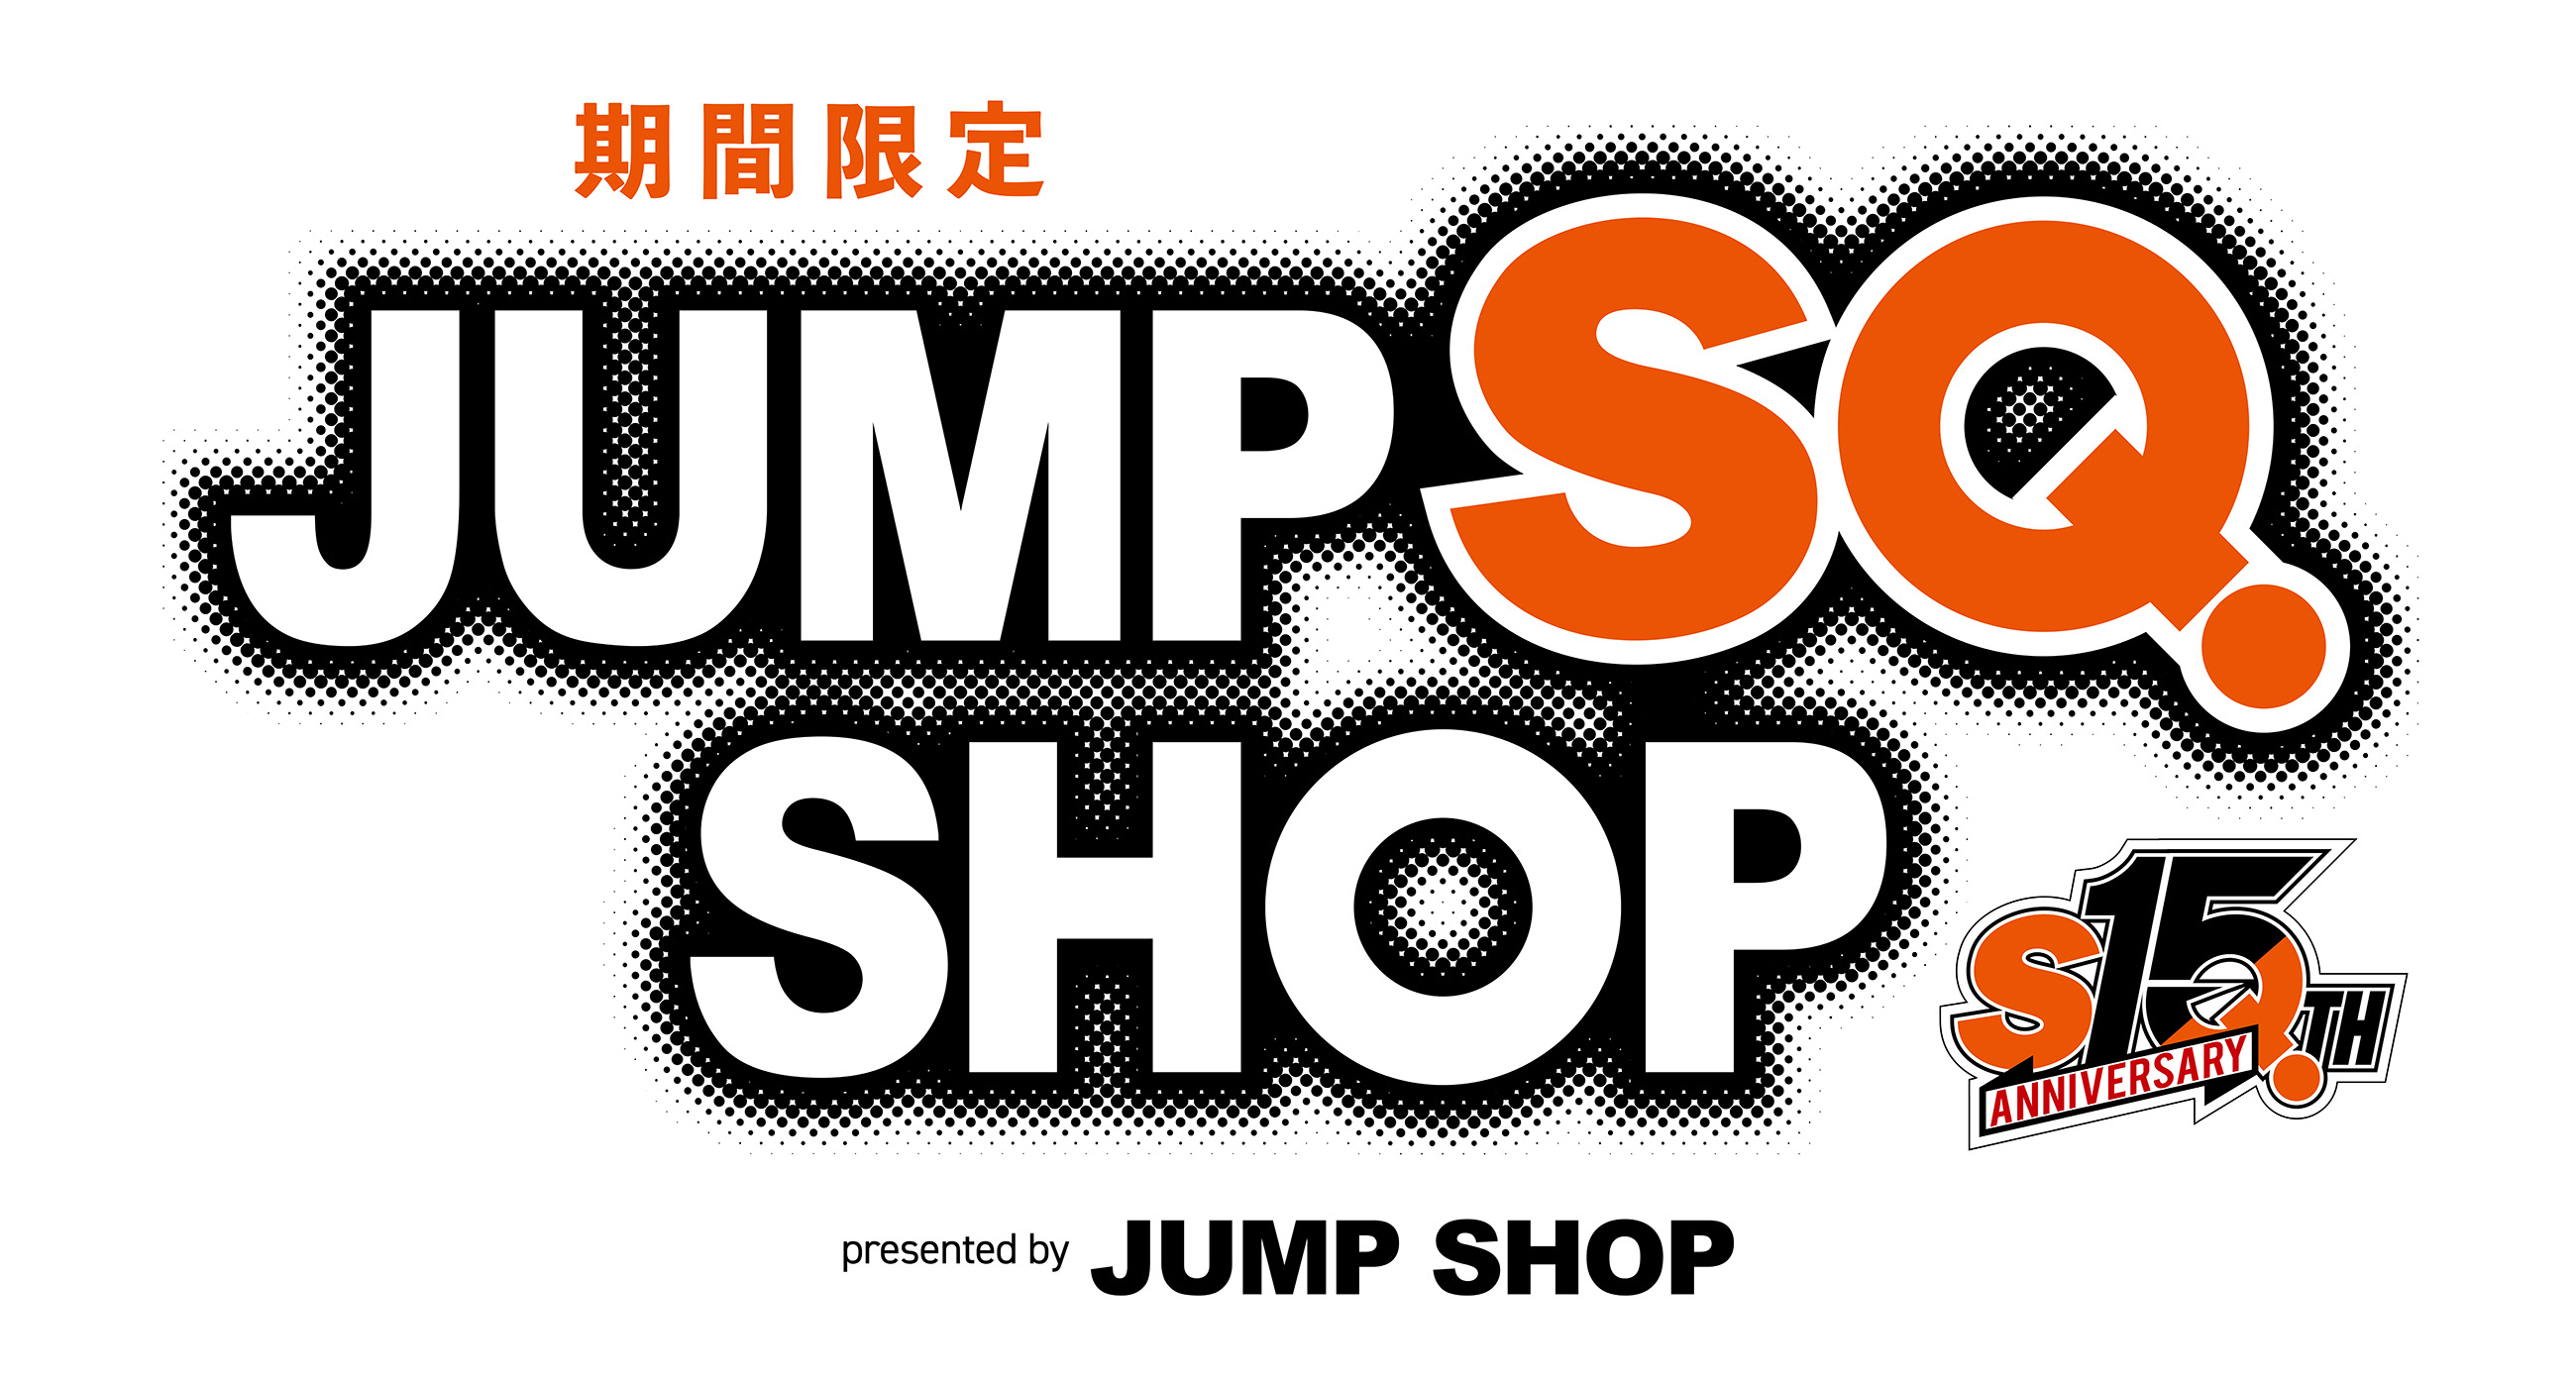 期間限定ジャンプSQ.ショップ　presented by JUMP SHOP 「ジャンプSQ.」作家先生サイン会・トークショー